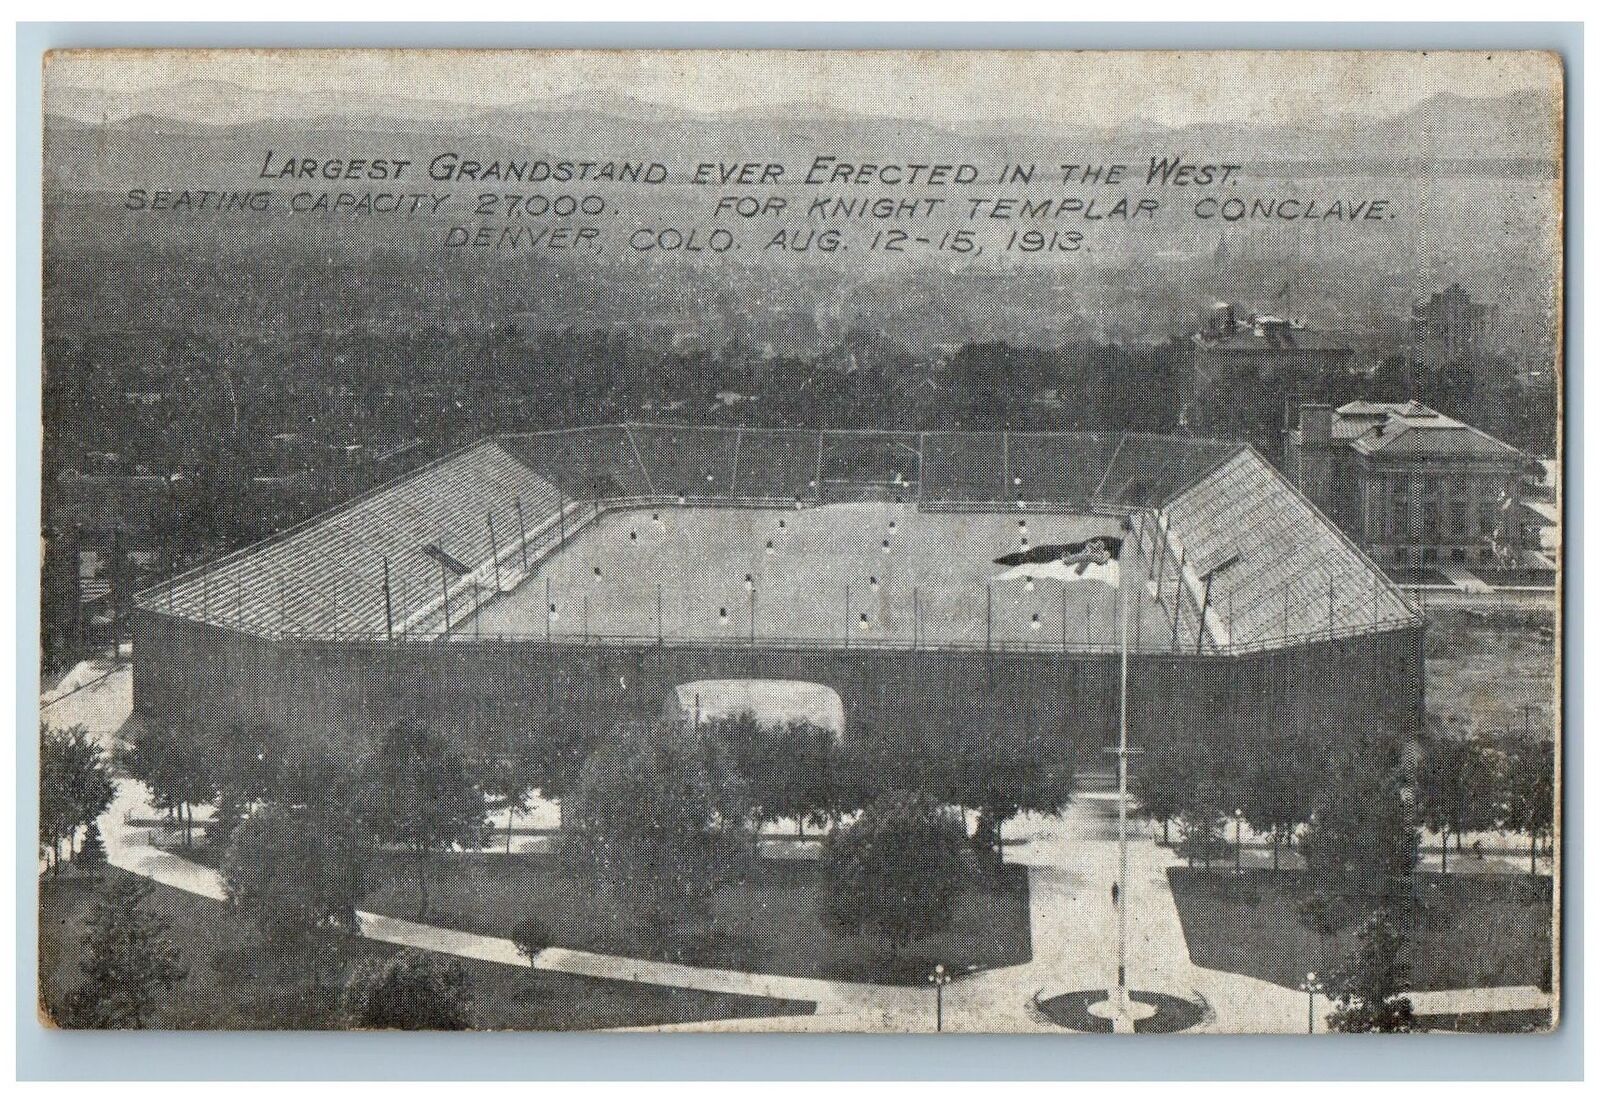 Denver Colorado Postcard Largest Grandstand Ever Erected In West c1910s Vintage